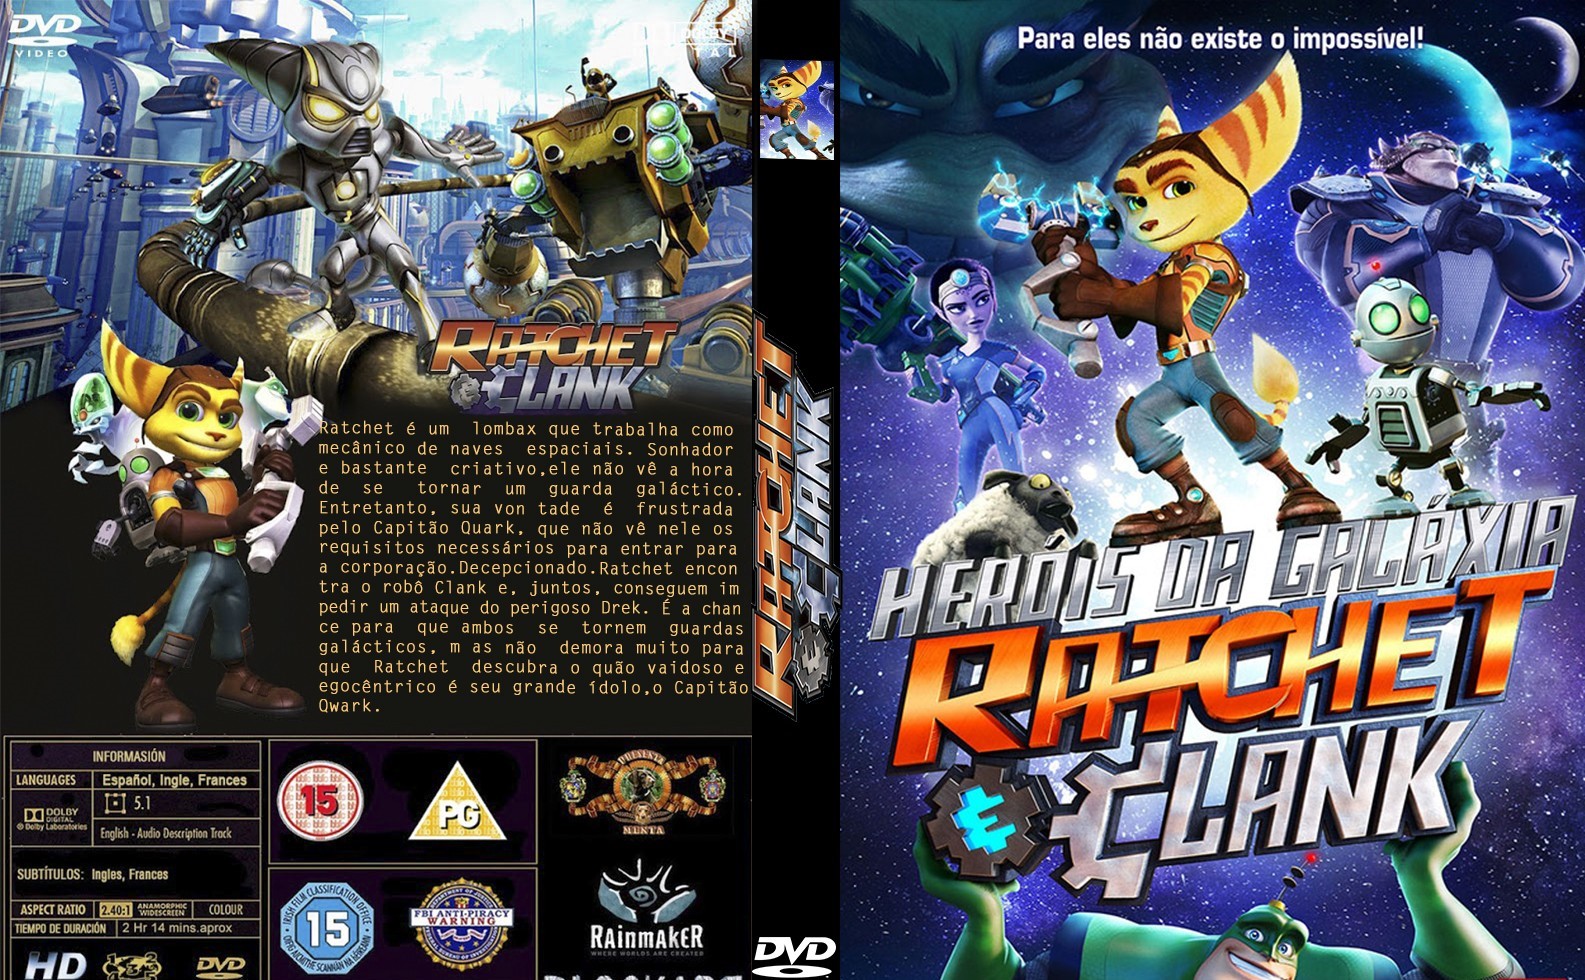 Heróis da Galáxia: Ratchet e Clank